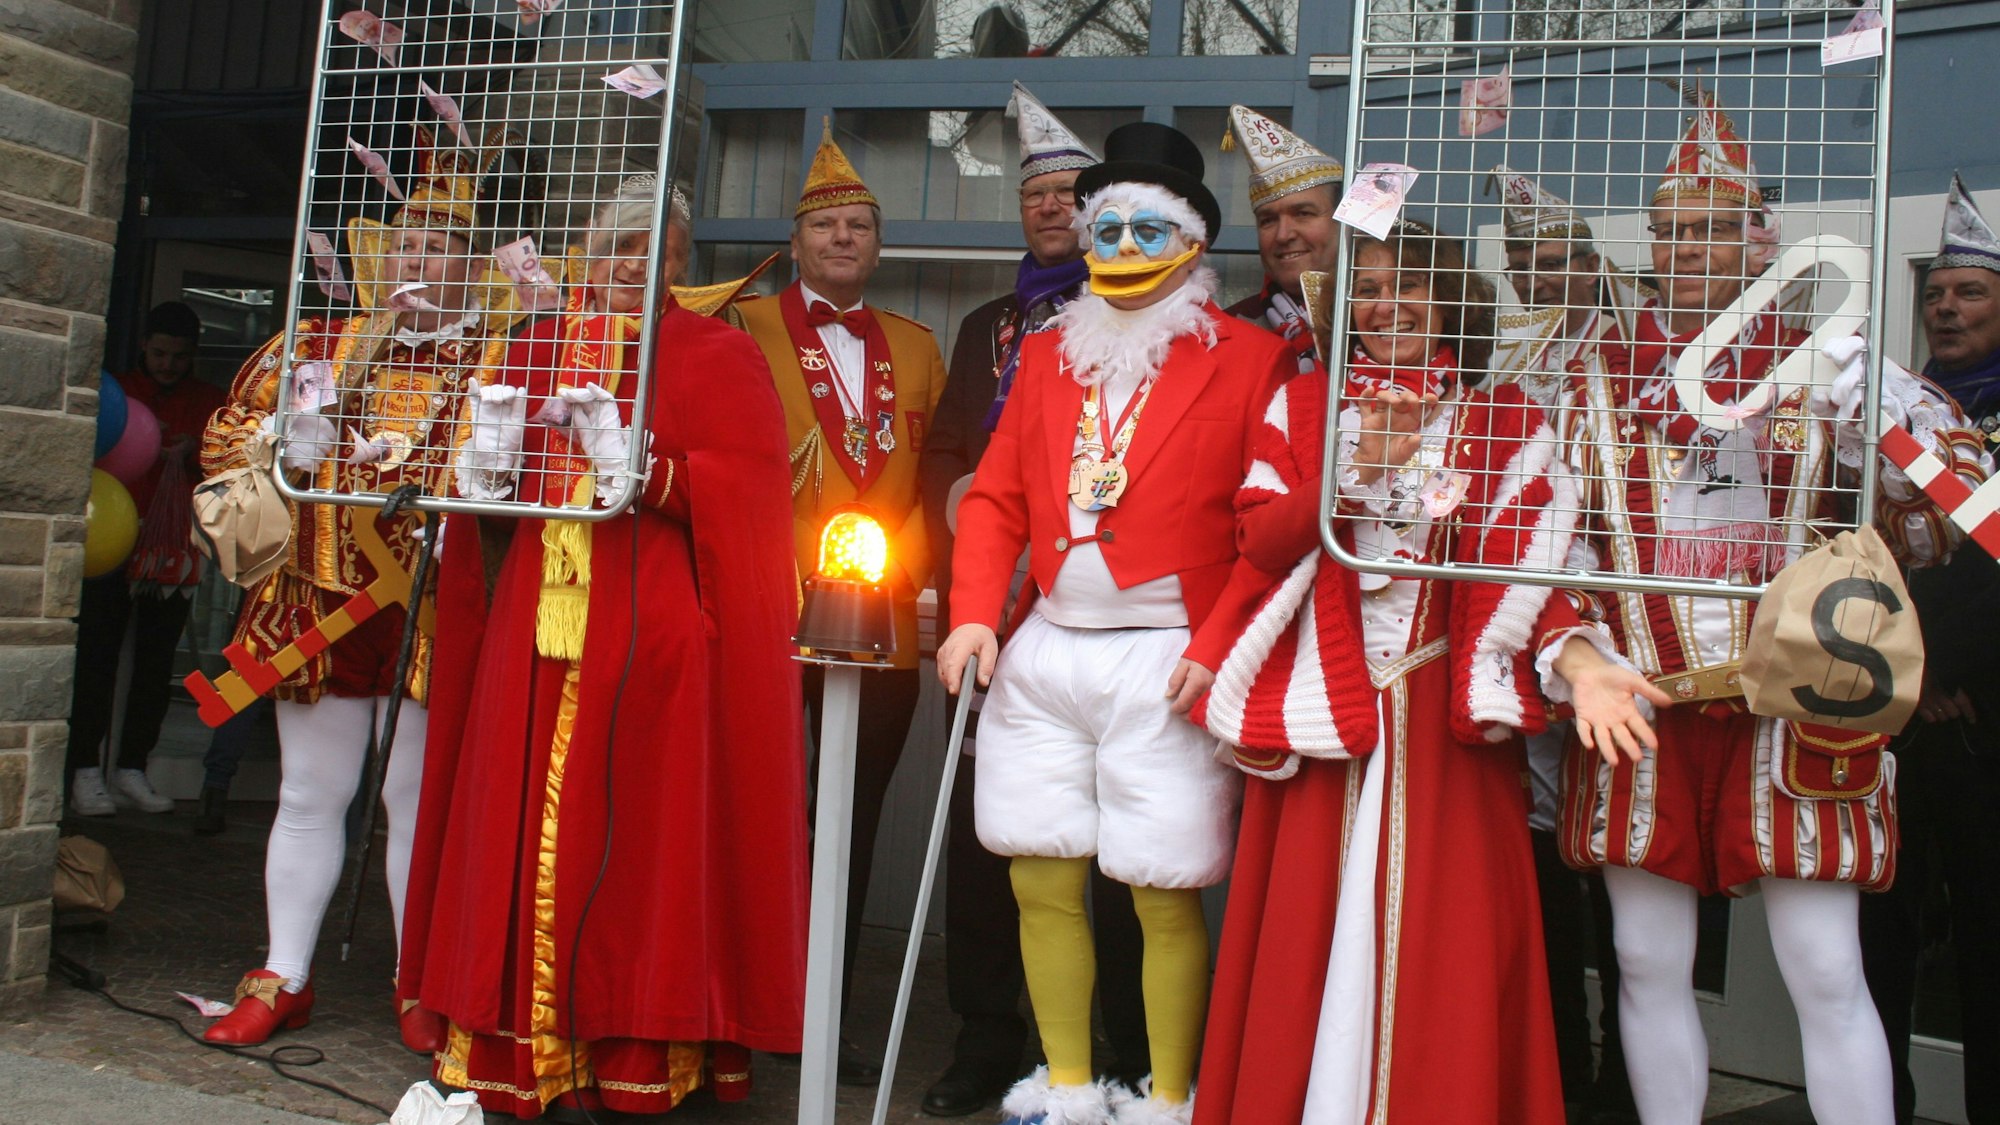 Dagobert Duck alias Willi Heider vereint mit Tollitäten und Karnevalisten vor dem Rathaus.